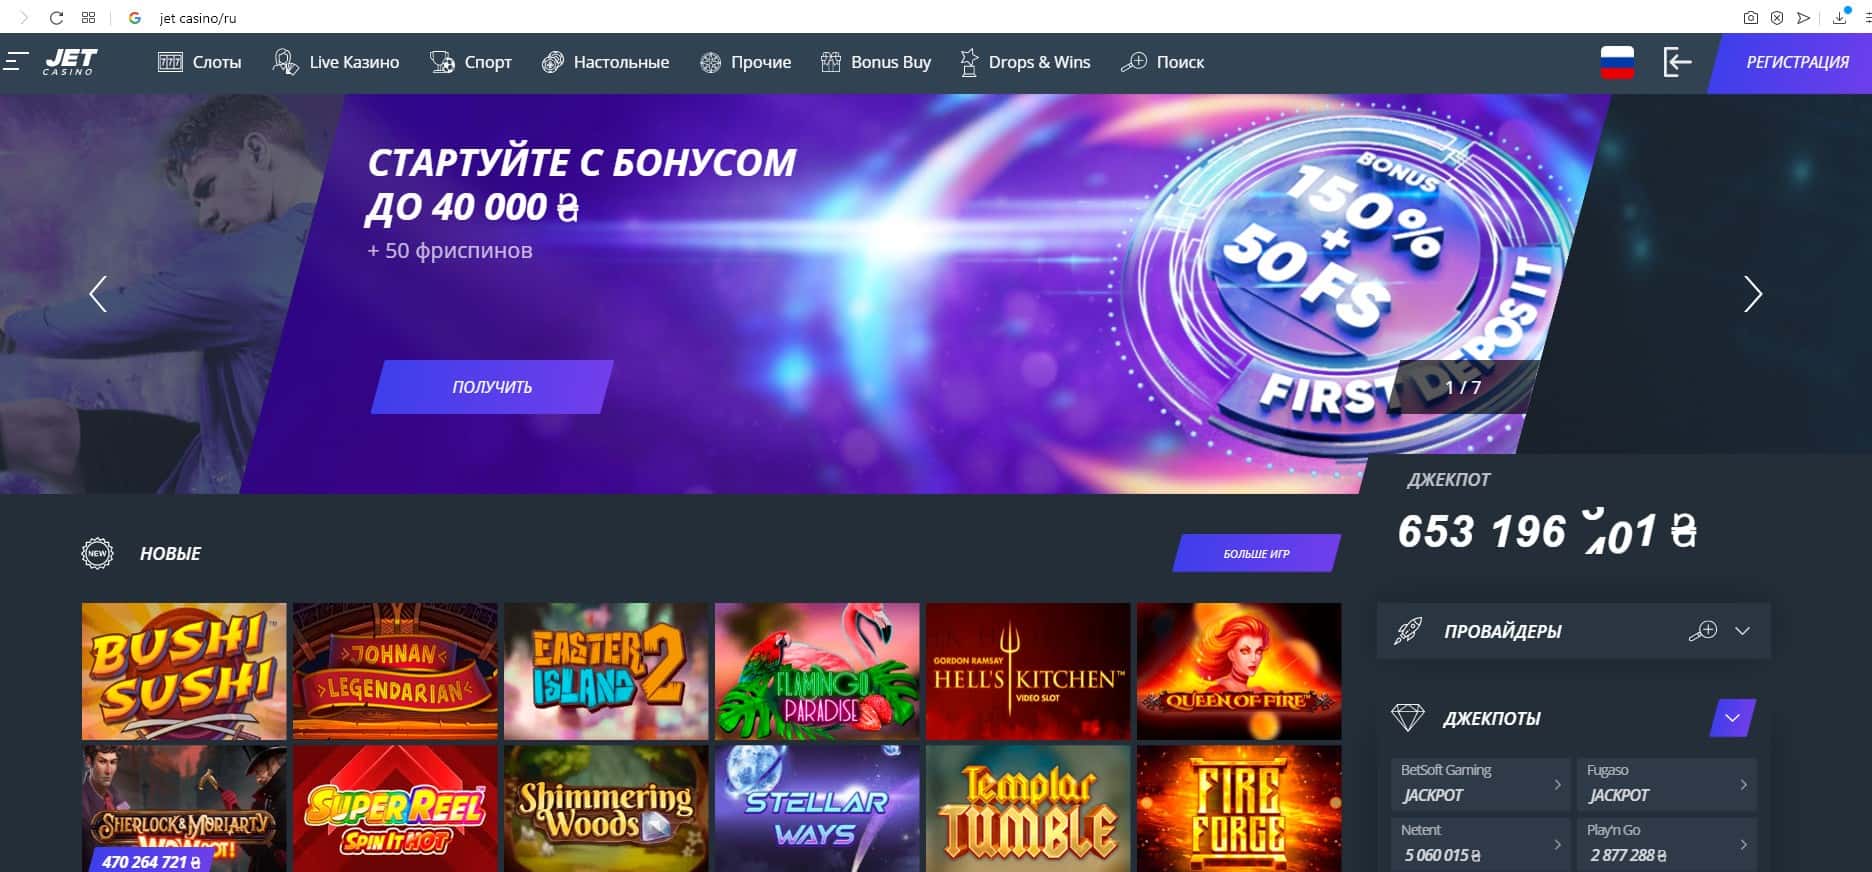 Jet casino вывод средств сколько онлайн казино рейтинг kazino reiting2 com